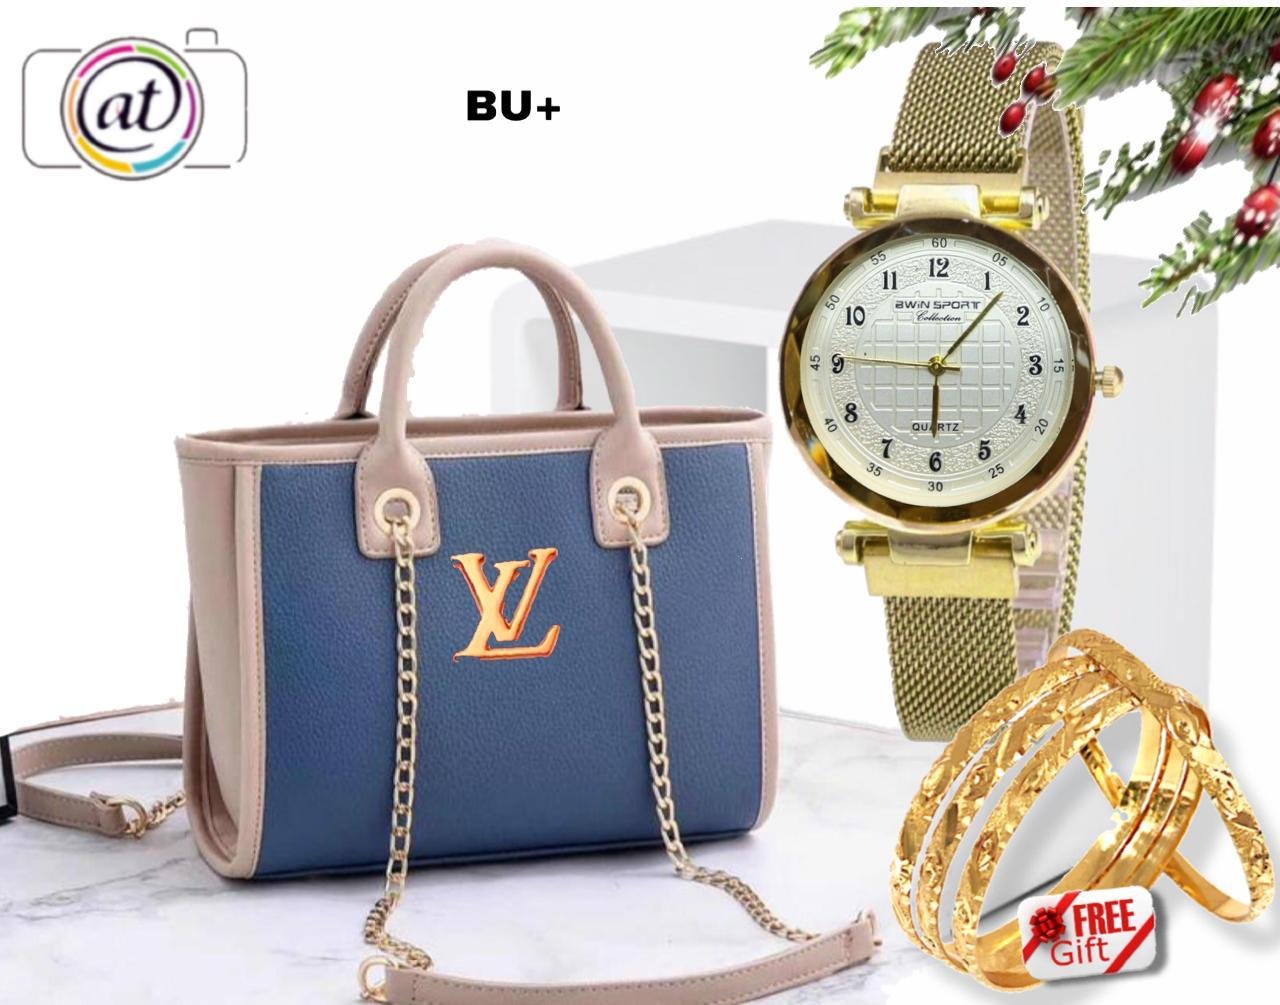 12 kd only Lv Bag 💼* - Amore Bazaar Kuwait Online Shop